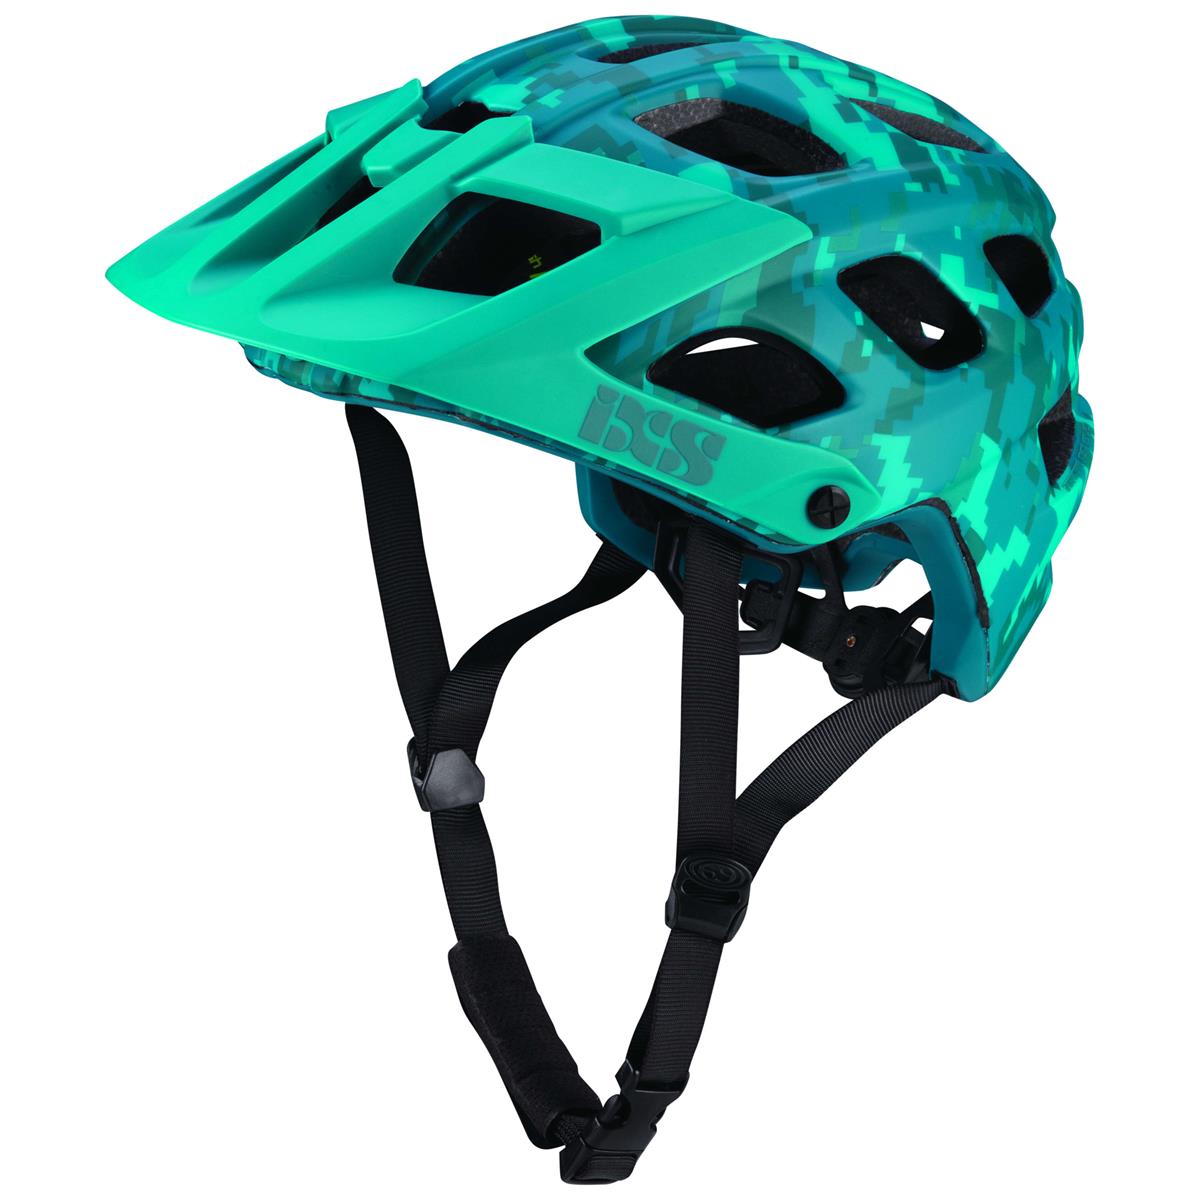 IXS Enduro MTB Helmet Trail RS EVO Lagoon - Camo Limited Edition